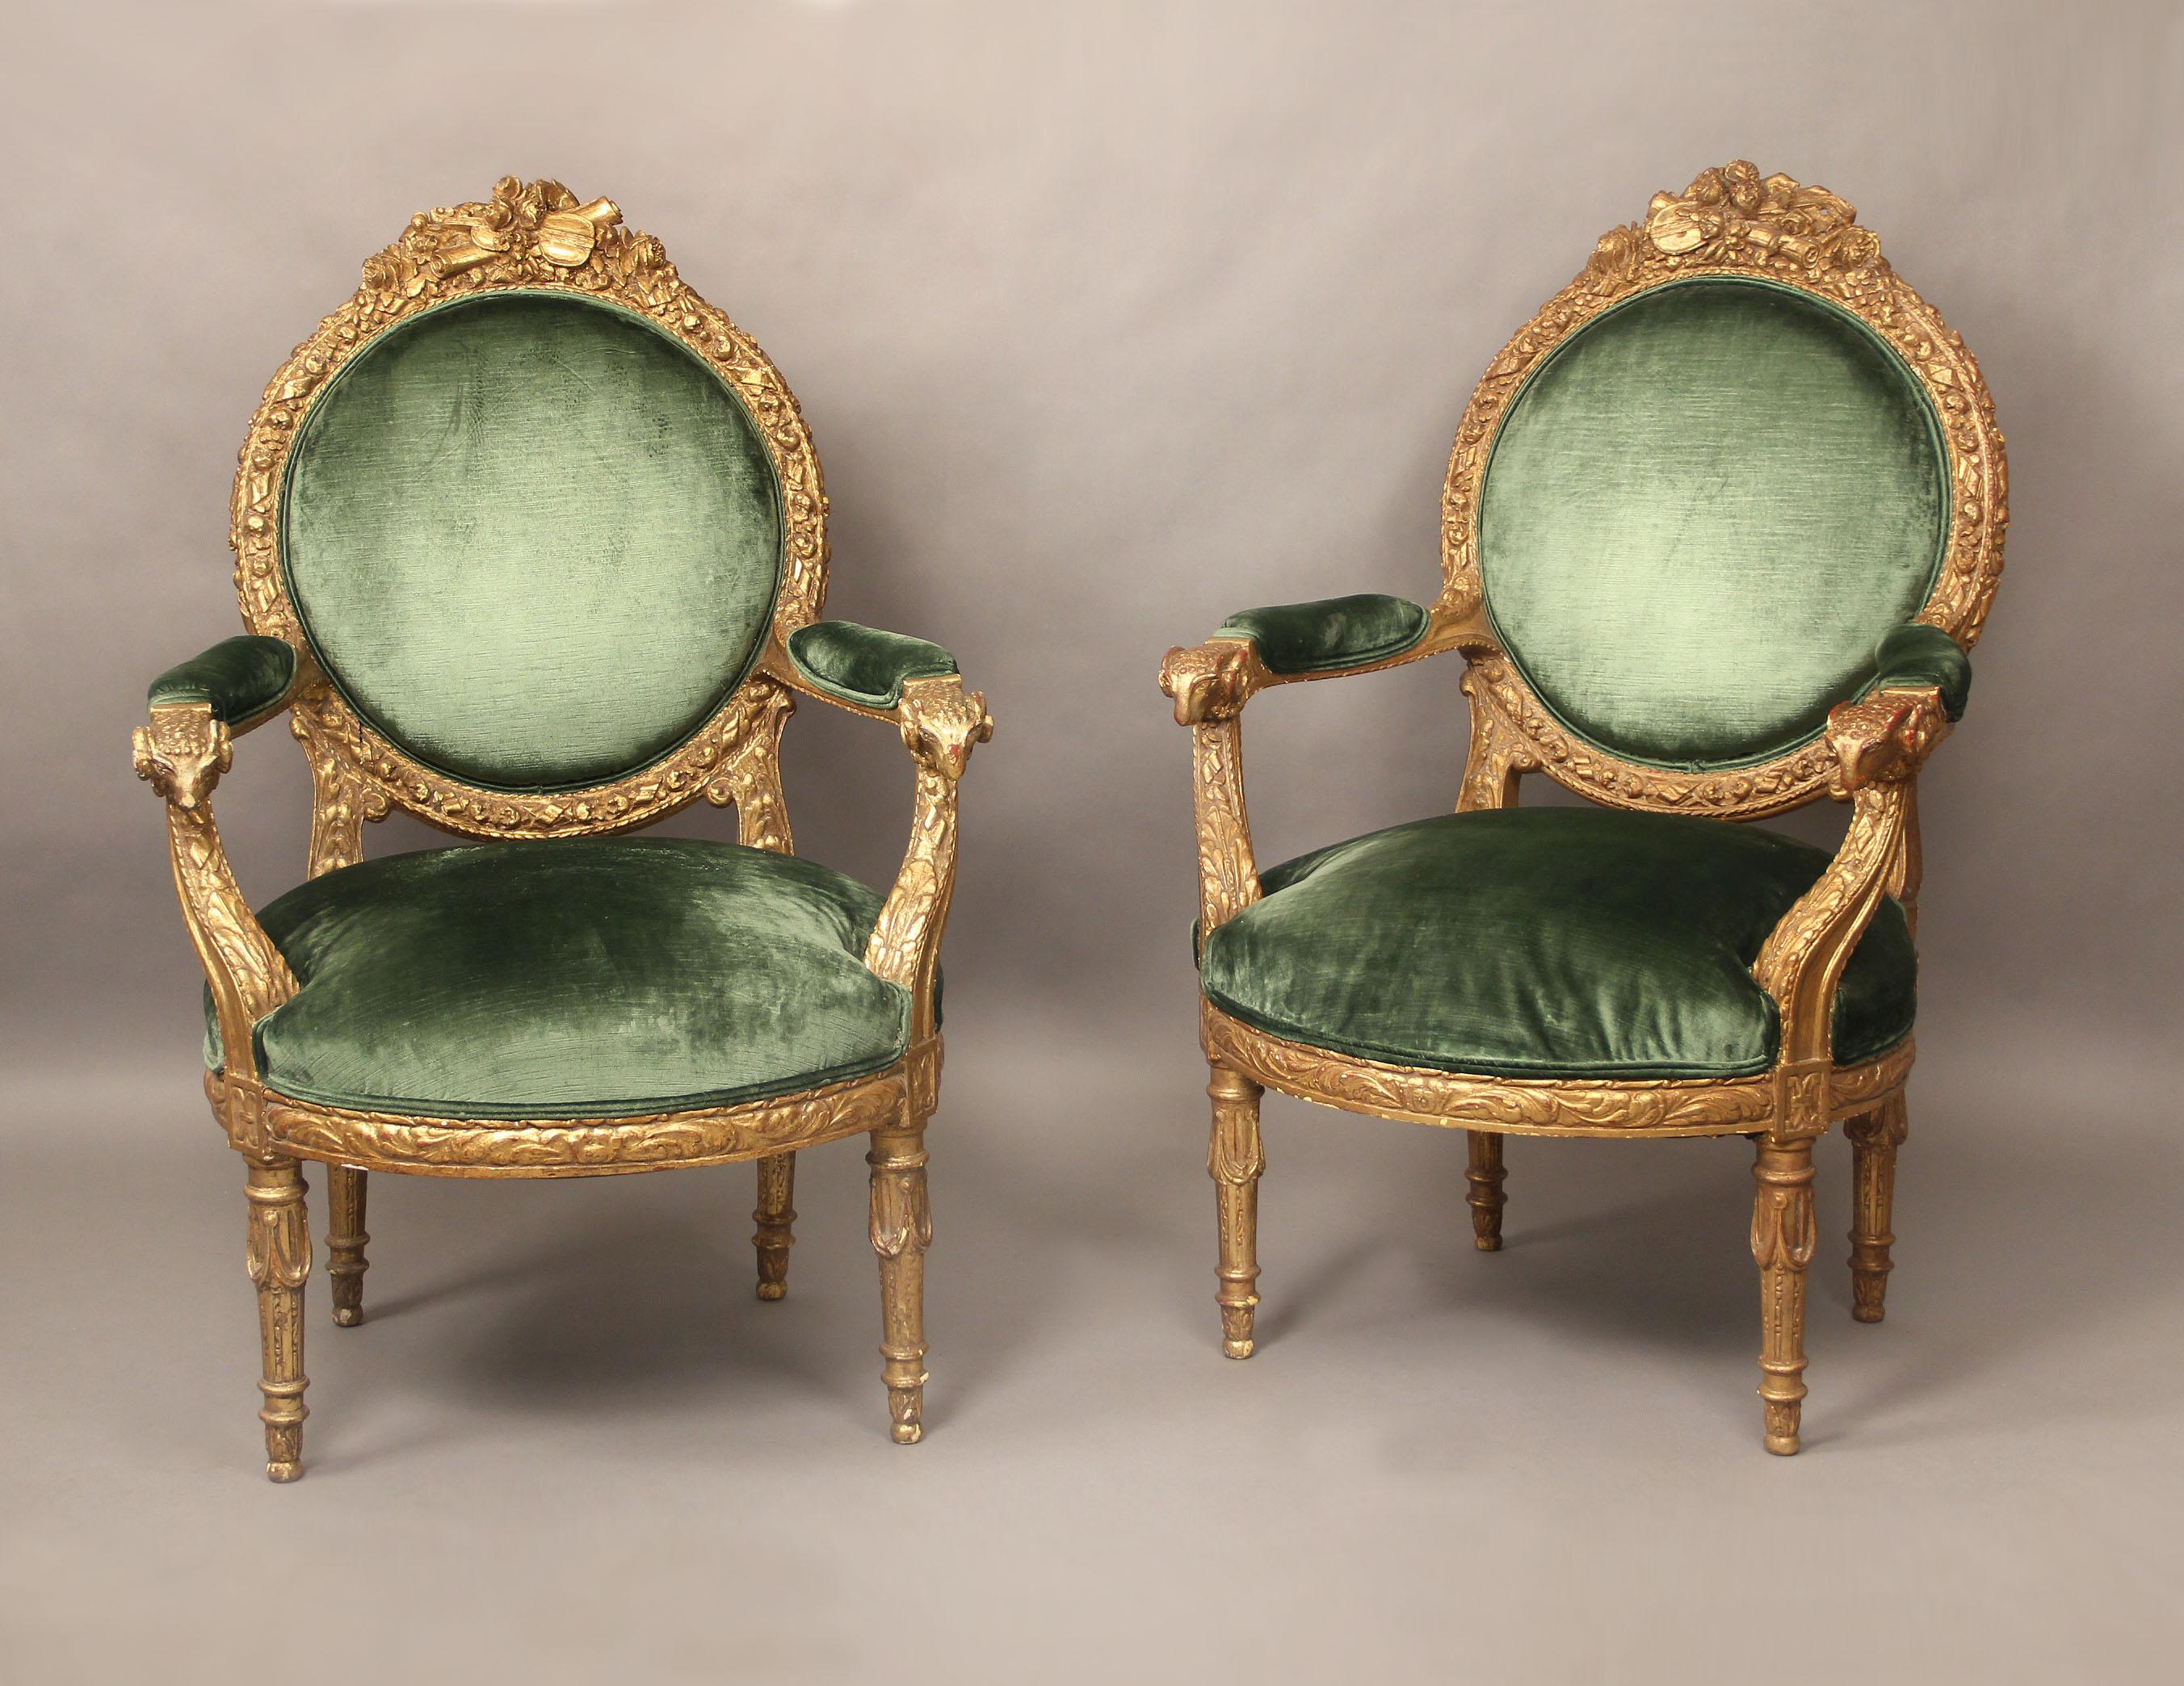 Une très belle paire de fauteuils de style Louis XVI de la fin du 19ème siècle en bois doré.

De grandes dimensions, avec des dossiers hauts, des cadres sculptés de fleurs avec des instruments sur le dessus et une tête de bélier sur les bras.